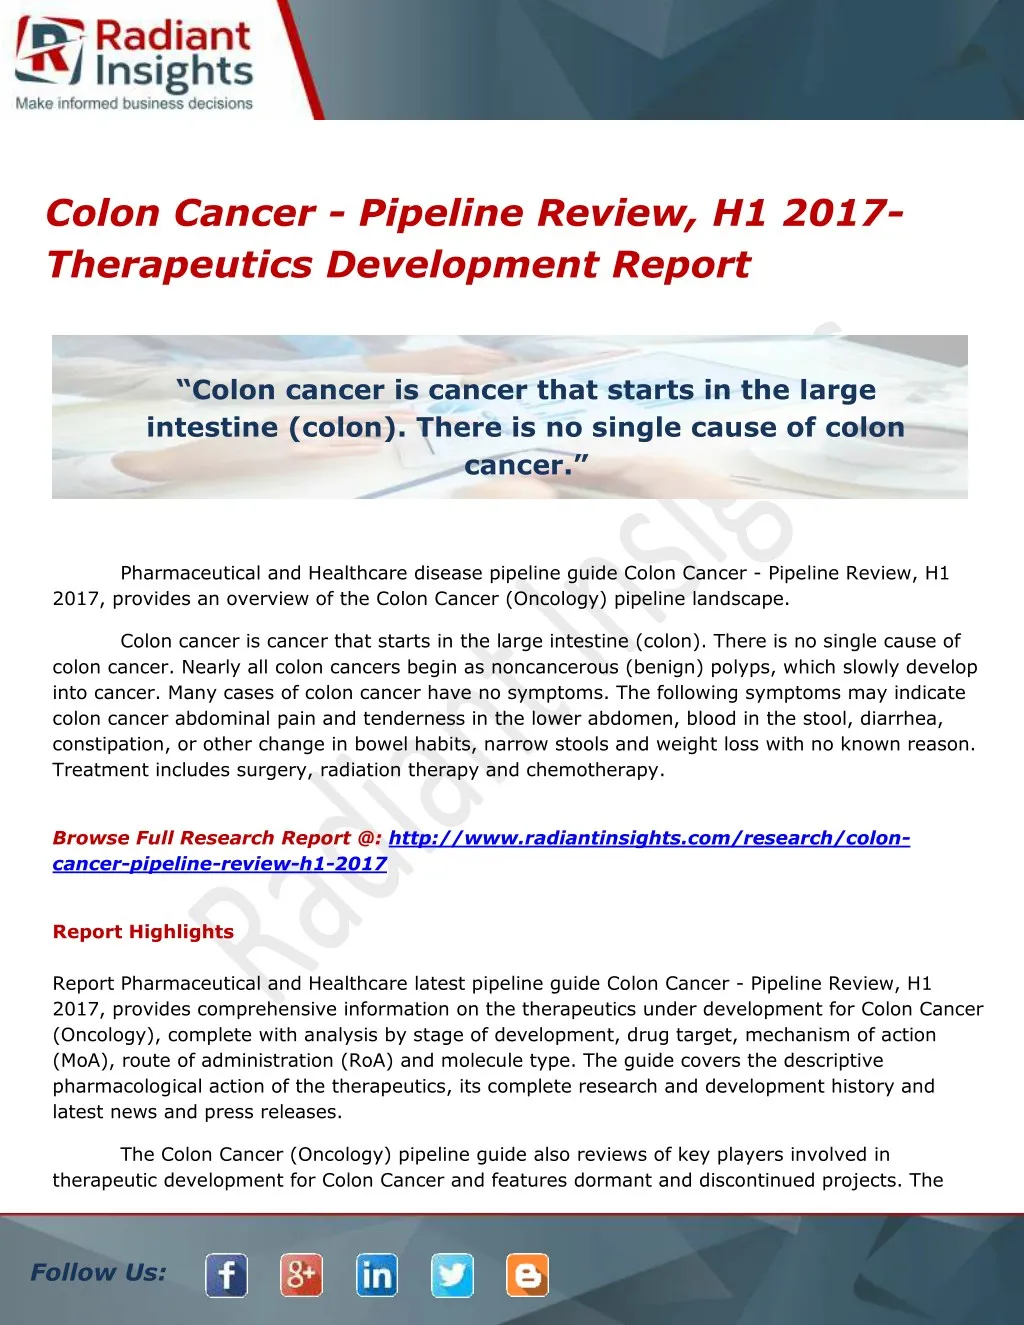 colon cancer pipeline review h1 2017 therapeutics